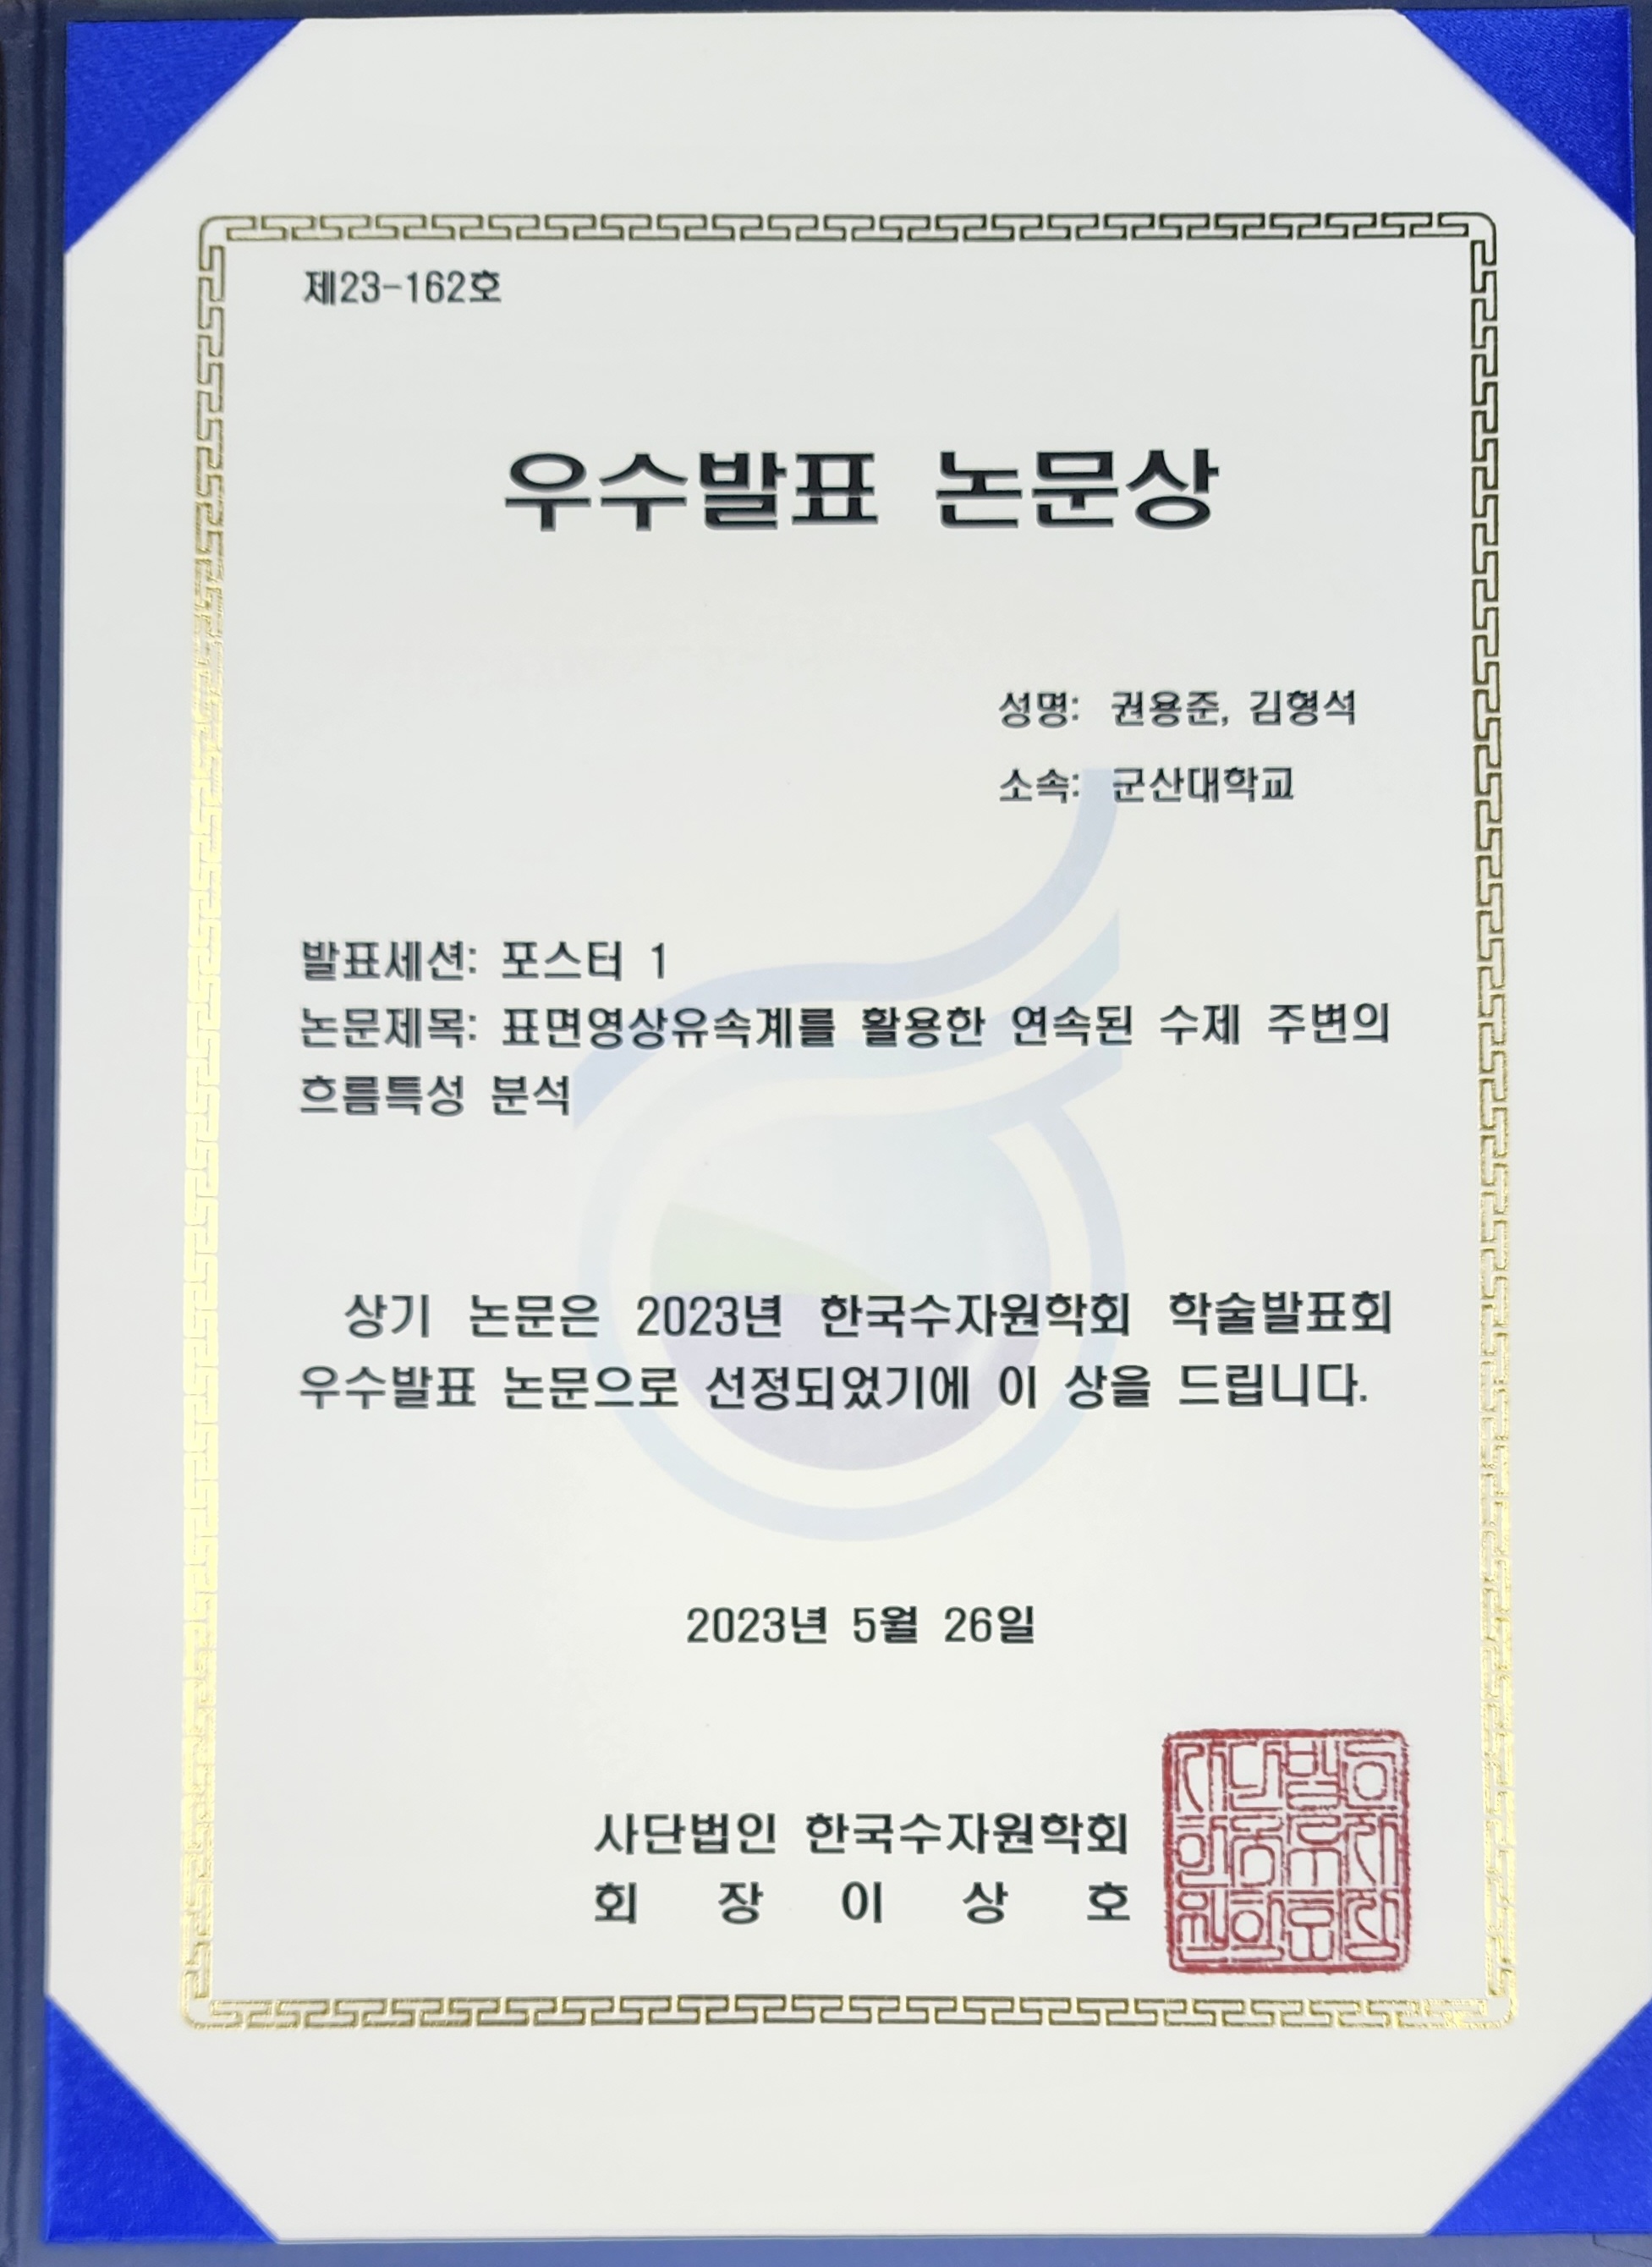 2023 한국수자원학회 학술발표회 우수발표 논문상 수상